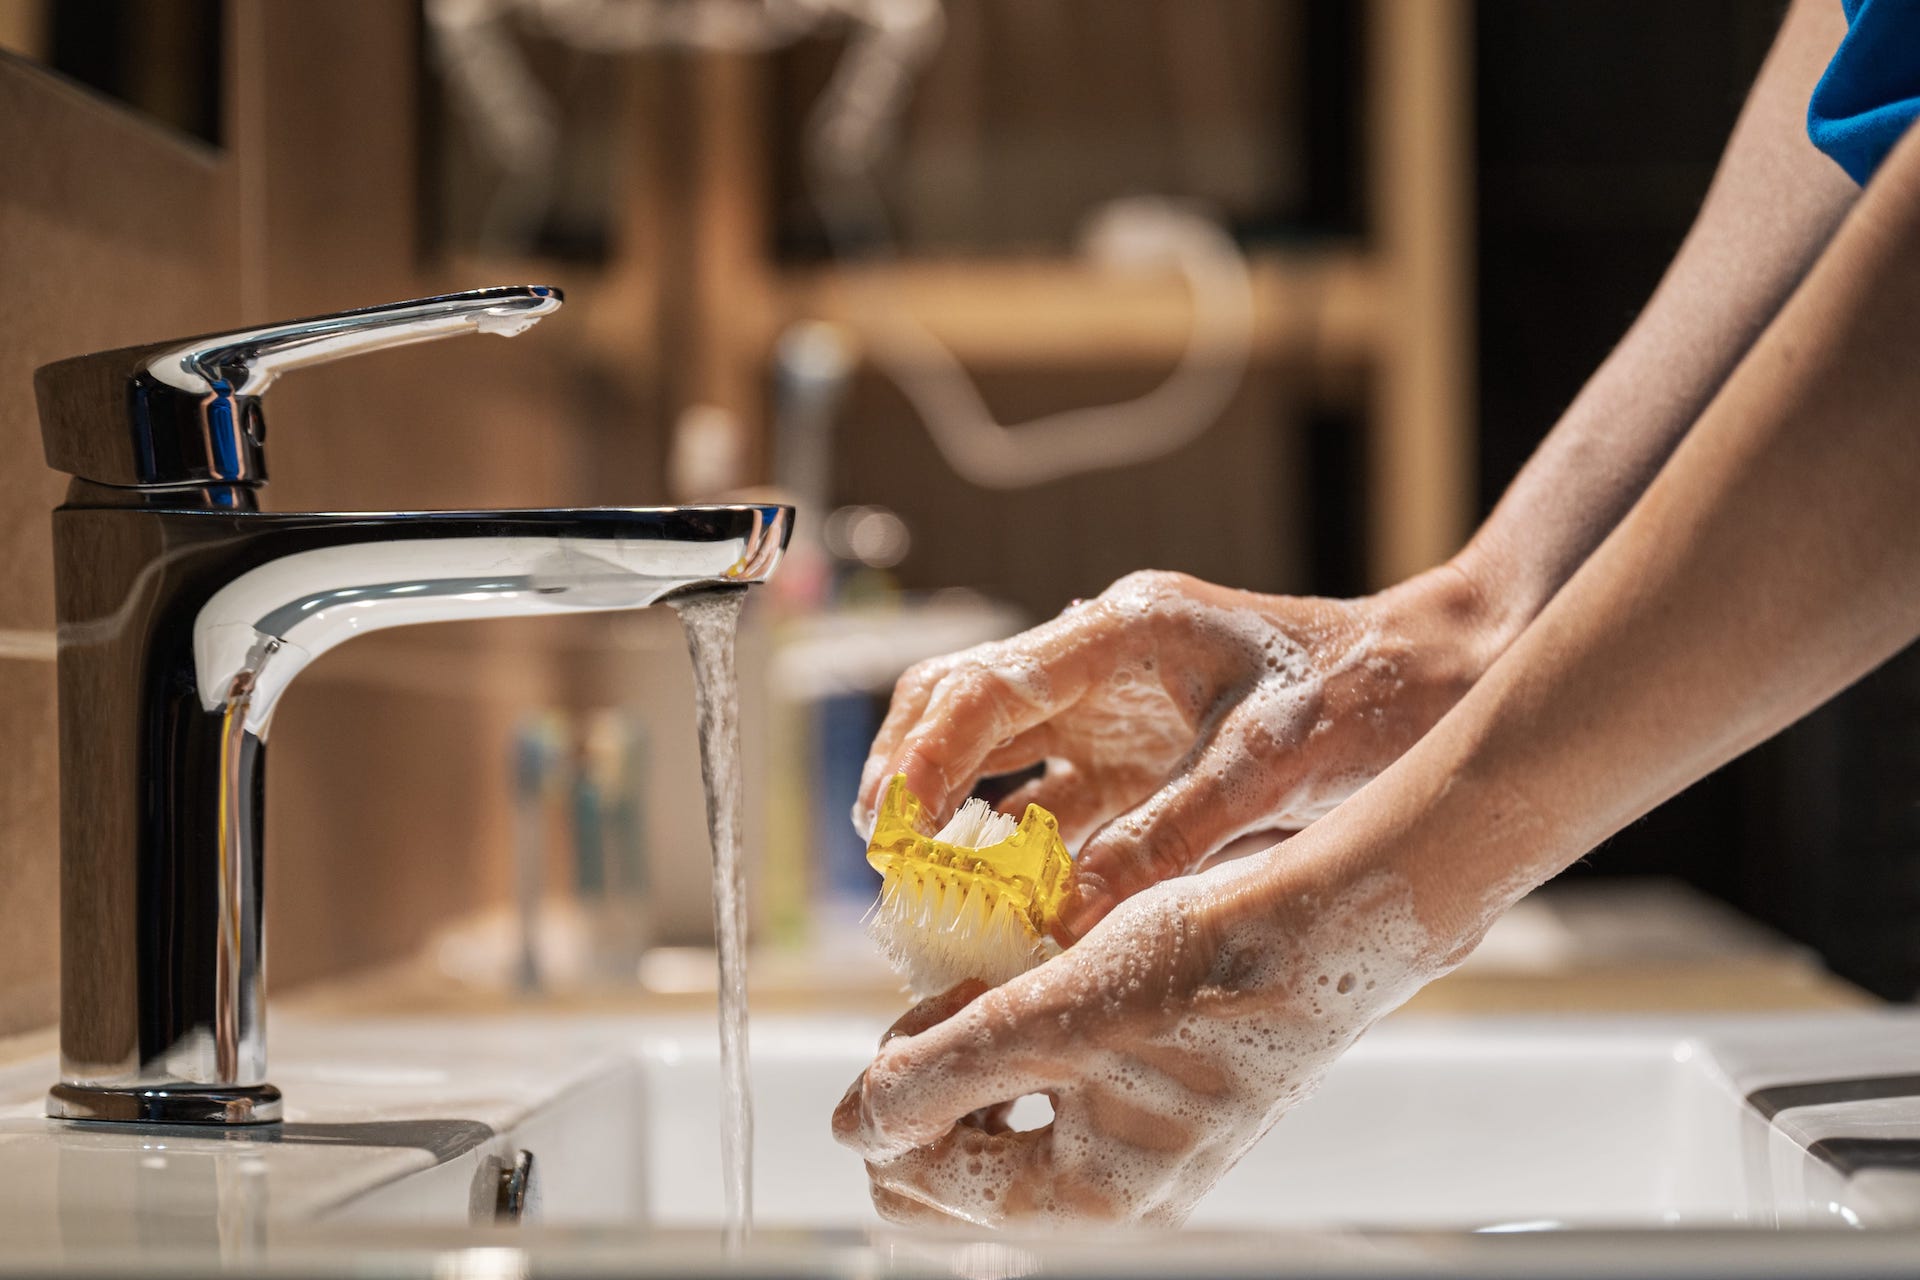 lavarsi bene le mani per una buona sicurezza alimentare in cucina